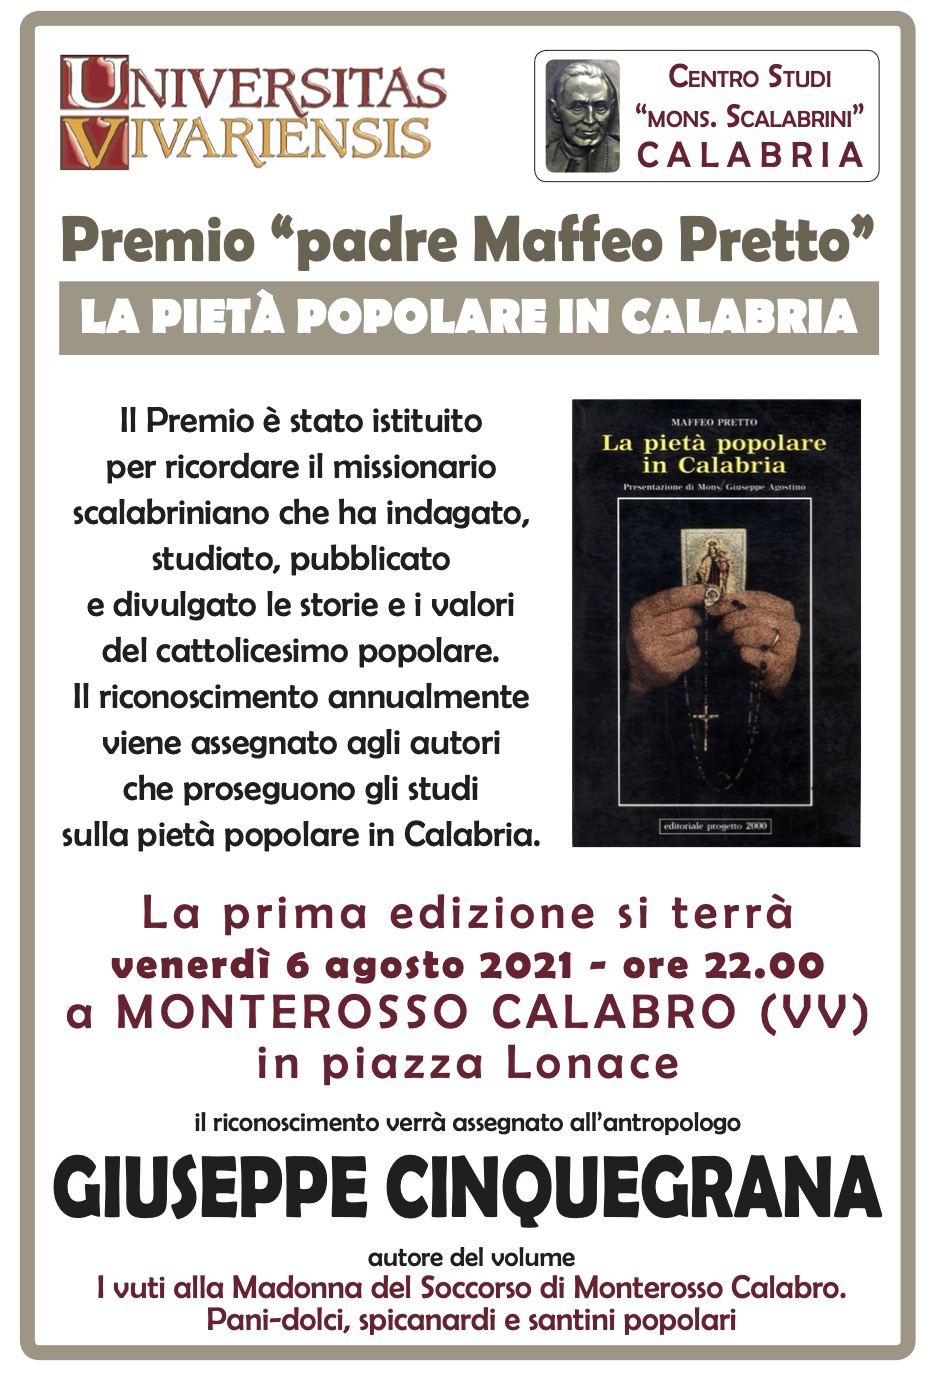 feo Pretto - La pietà popolare in Calabria" Buongiorno libri - dedicato al volume del prof. Giuseppe Cinquegrana